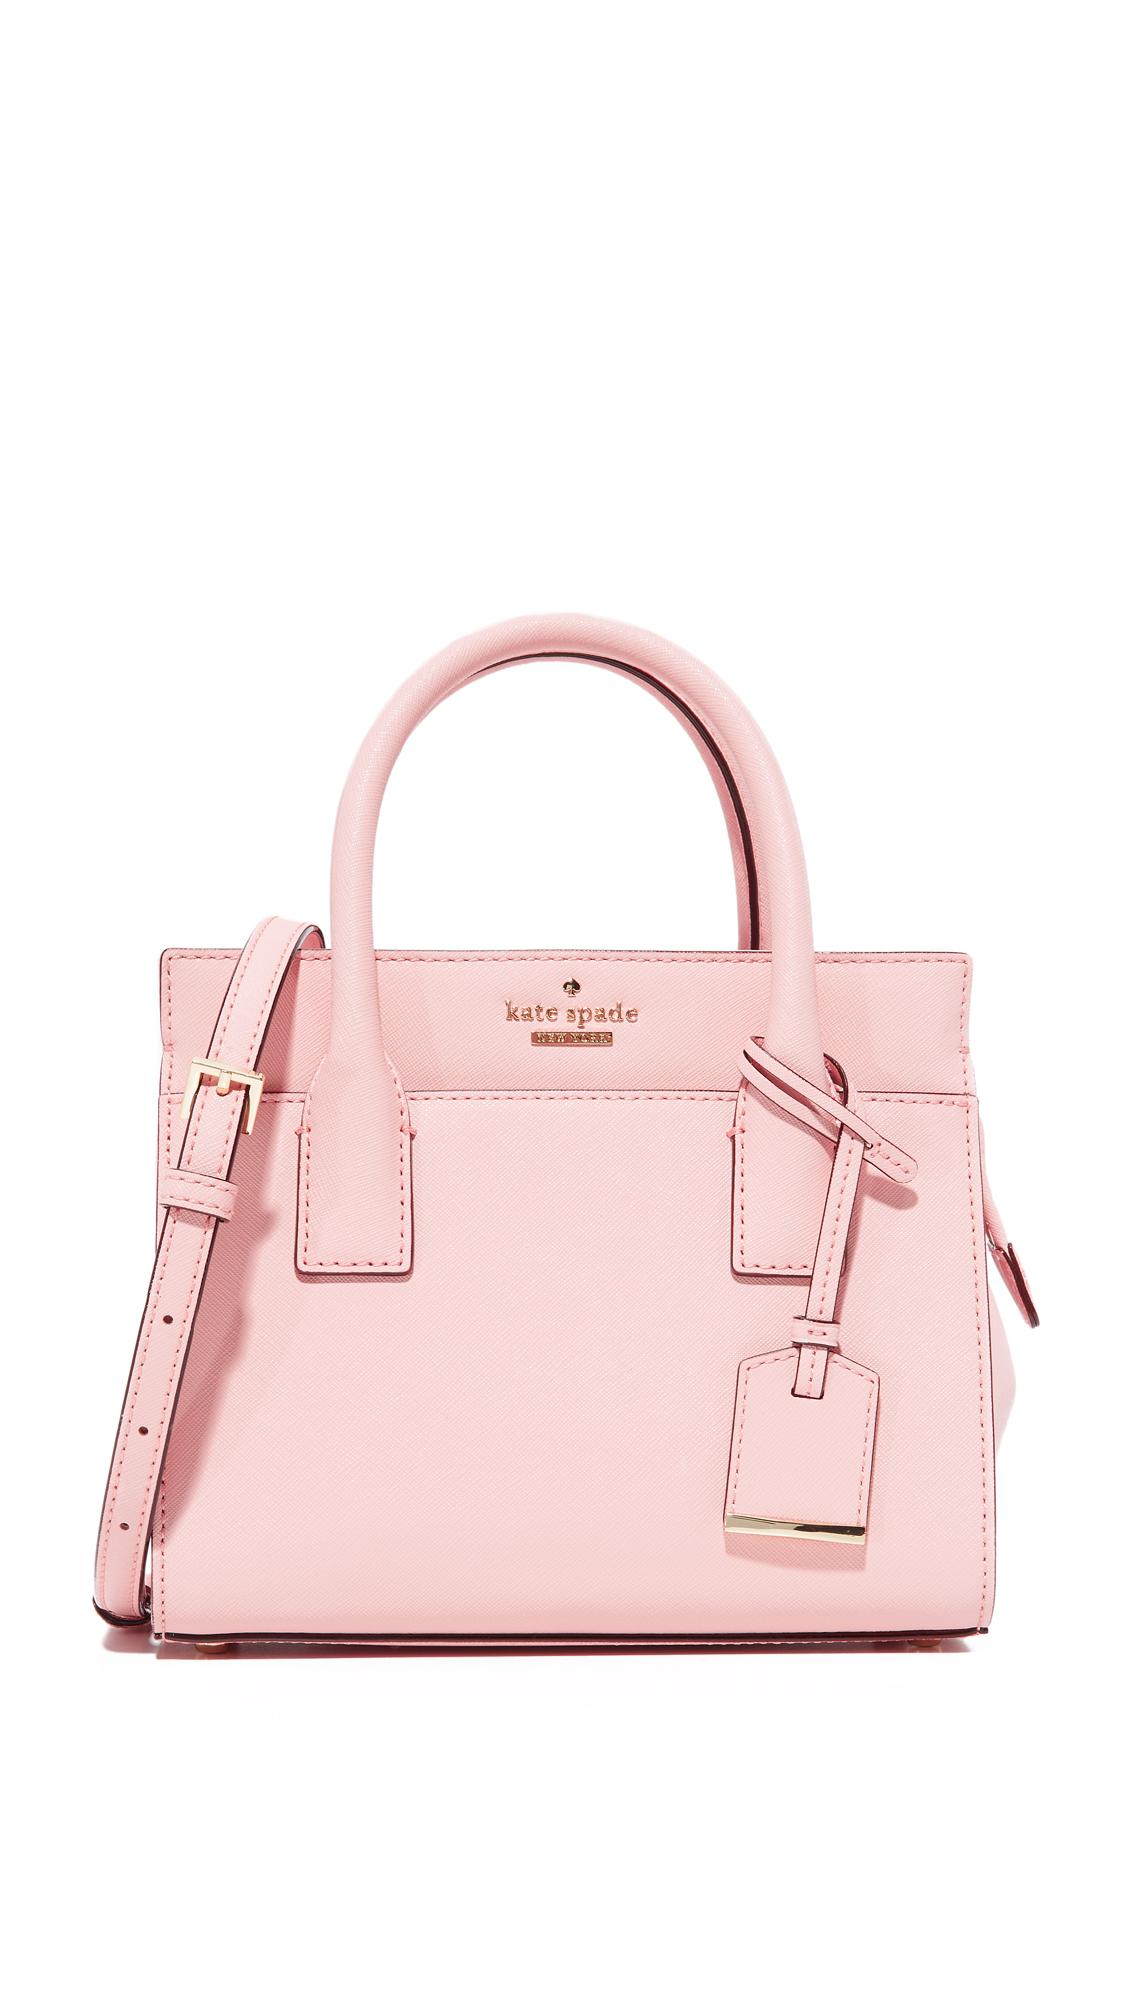 Kate Spade Handbag Pink Crossbody Handbags